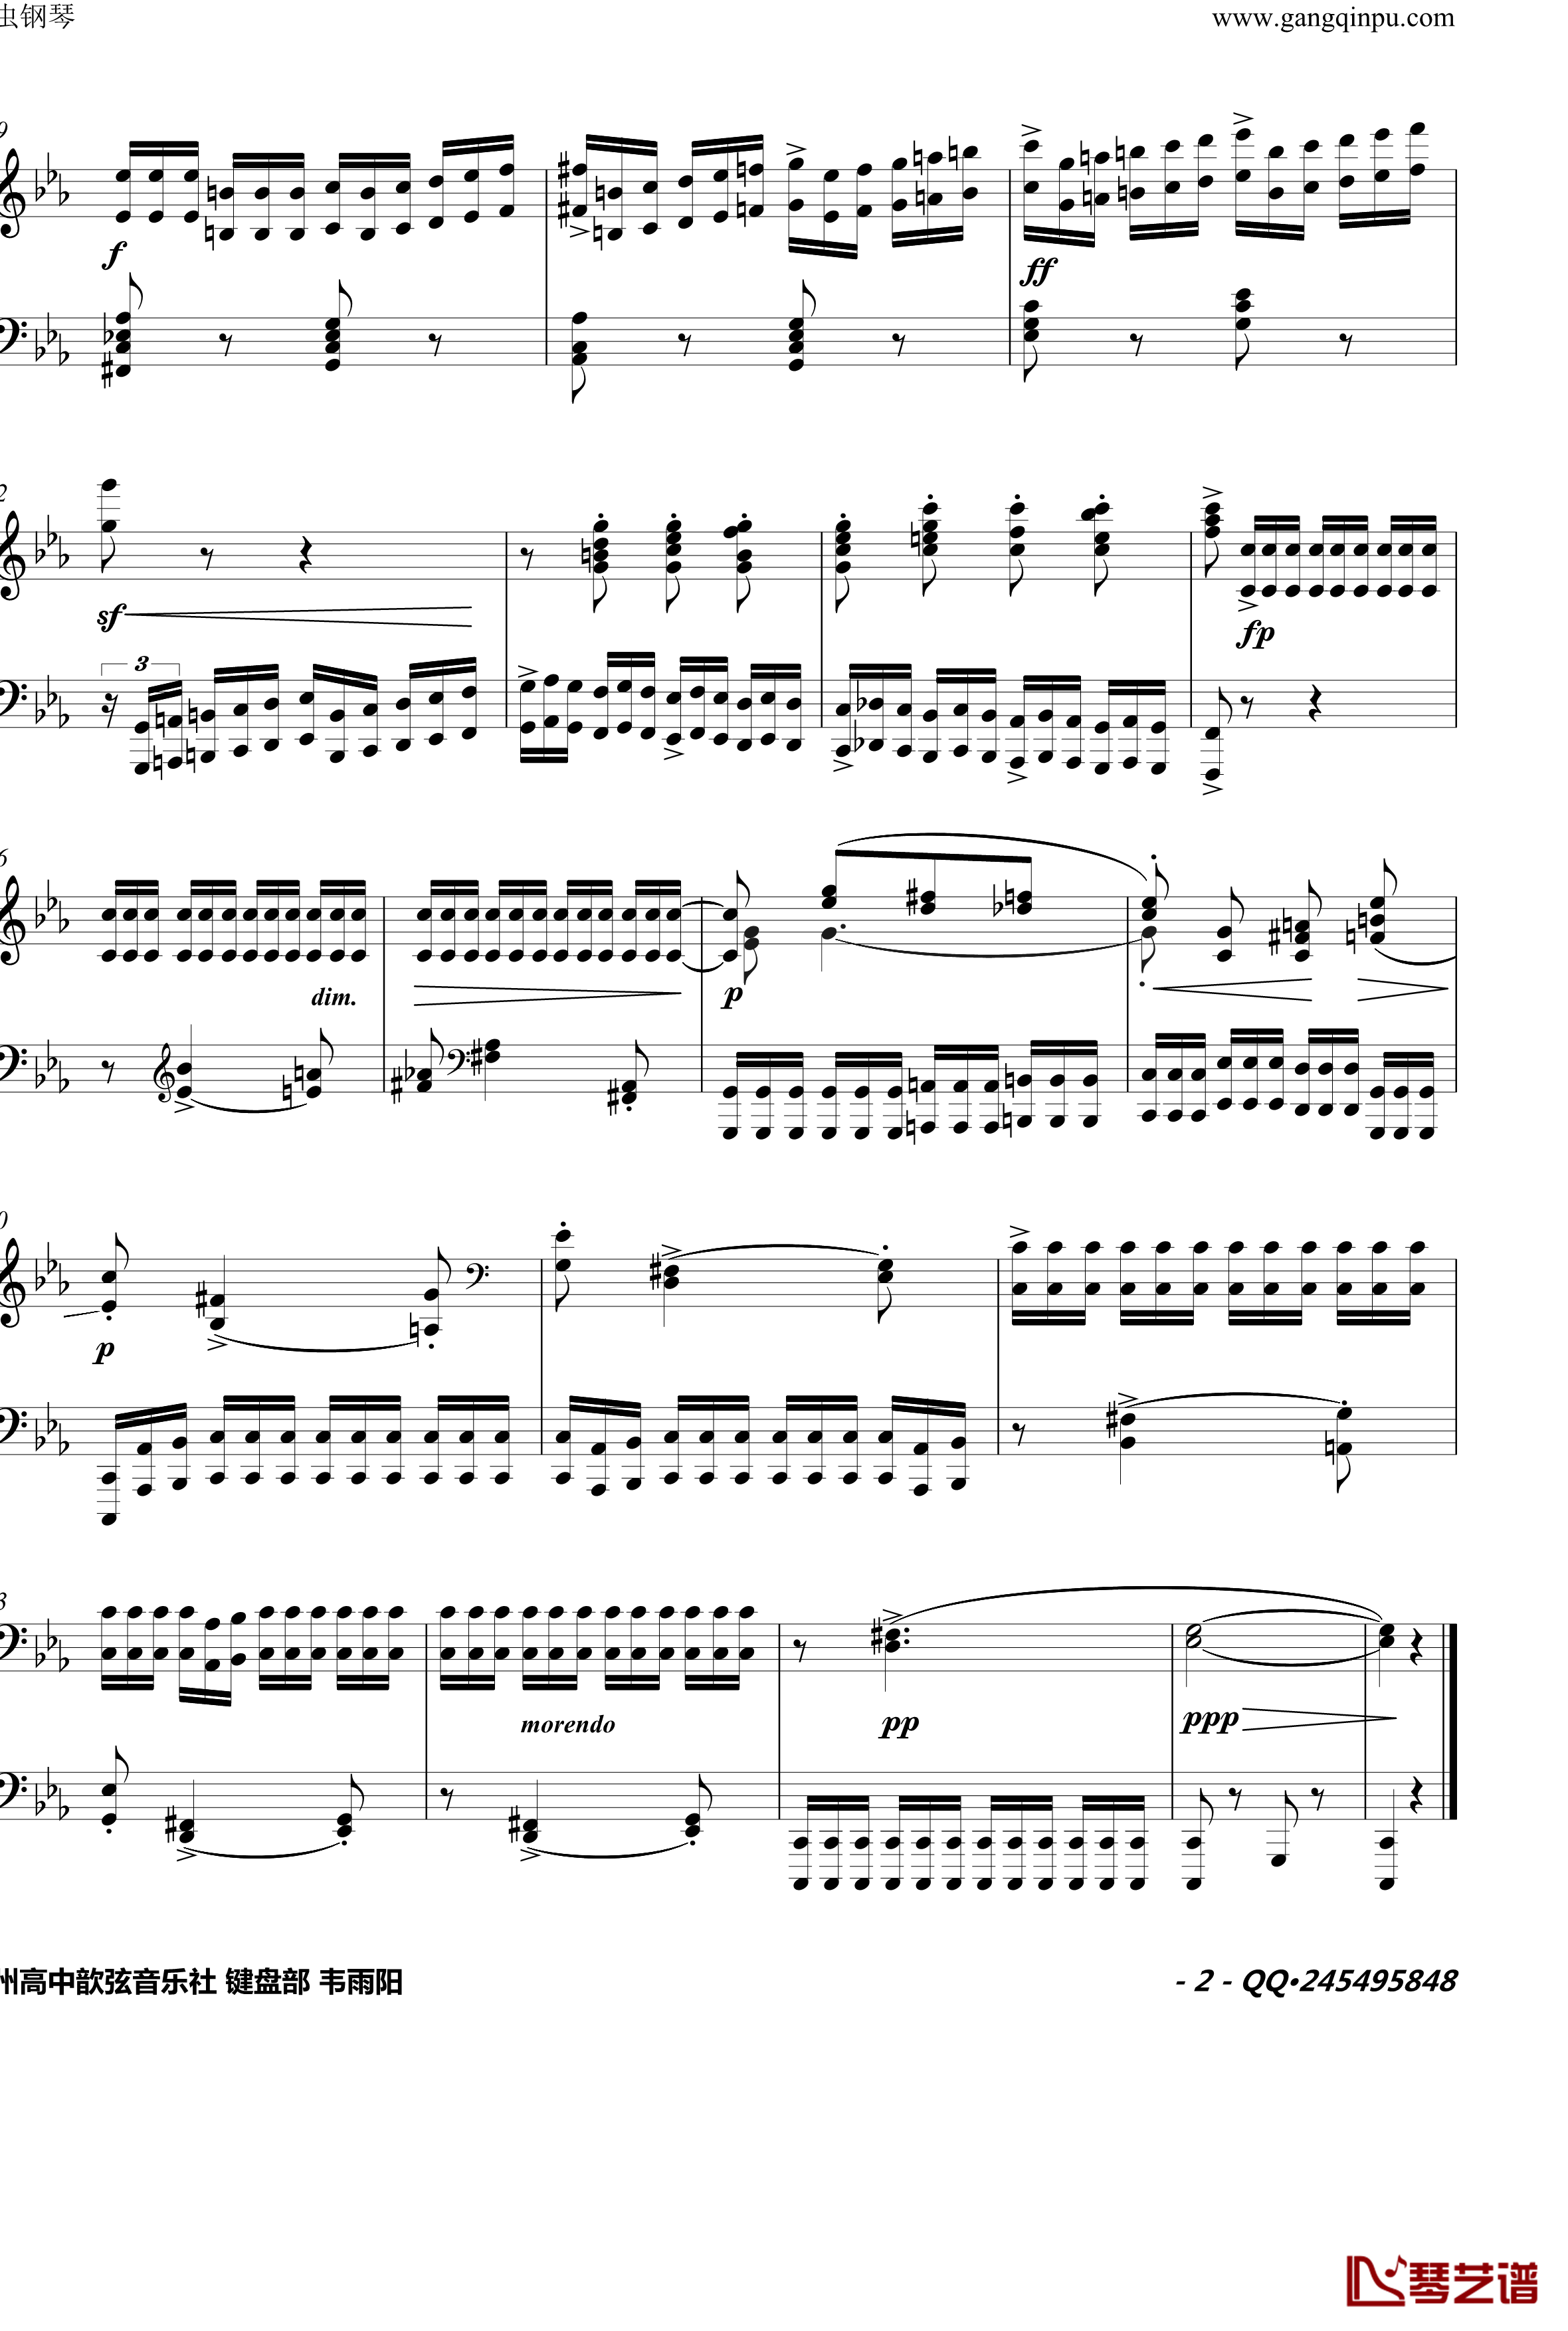 八度练习曲钢琴谱-卡本良斯基2